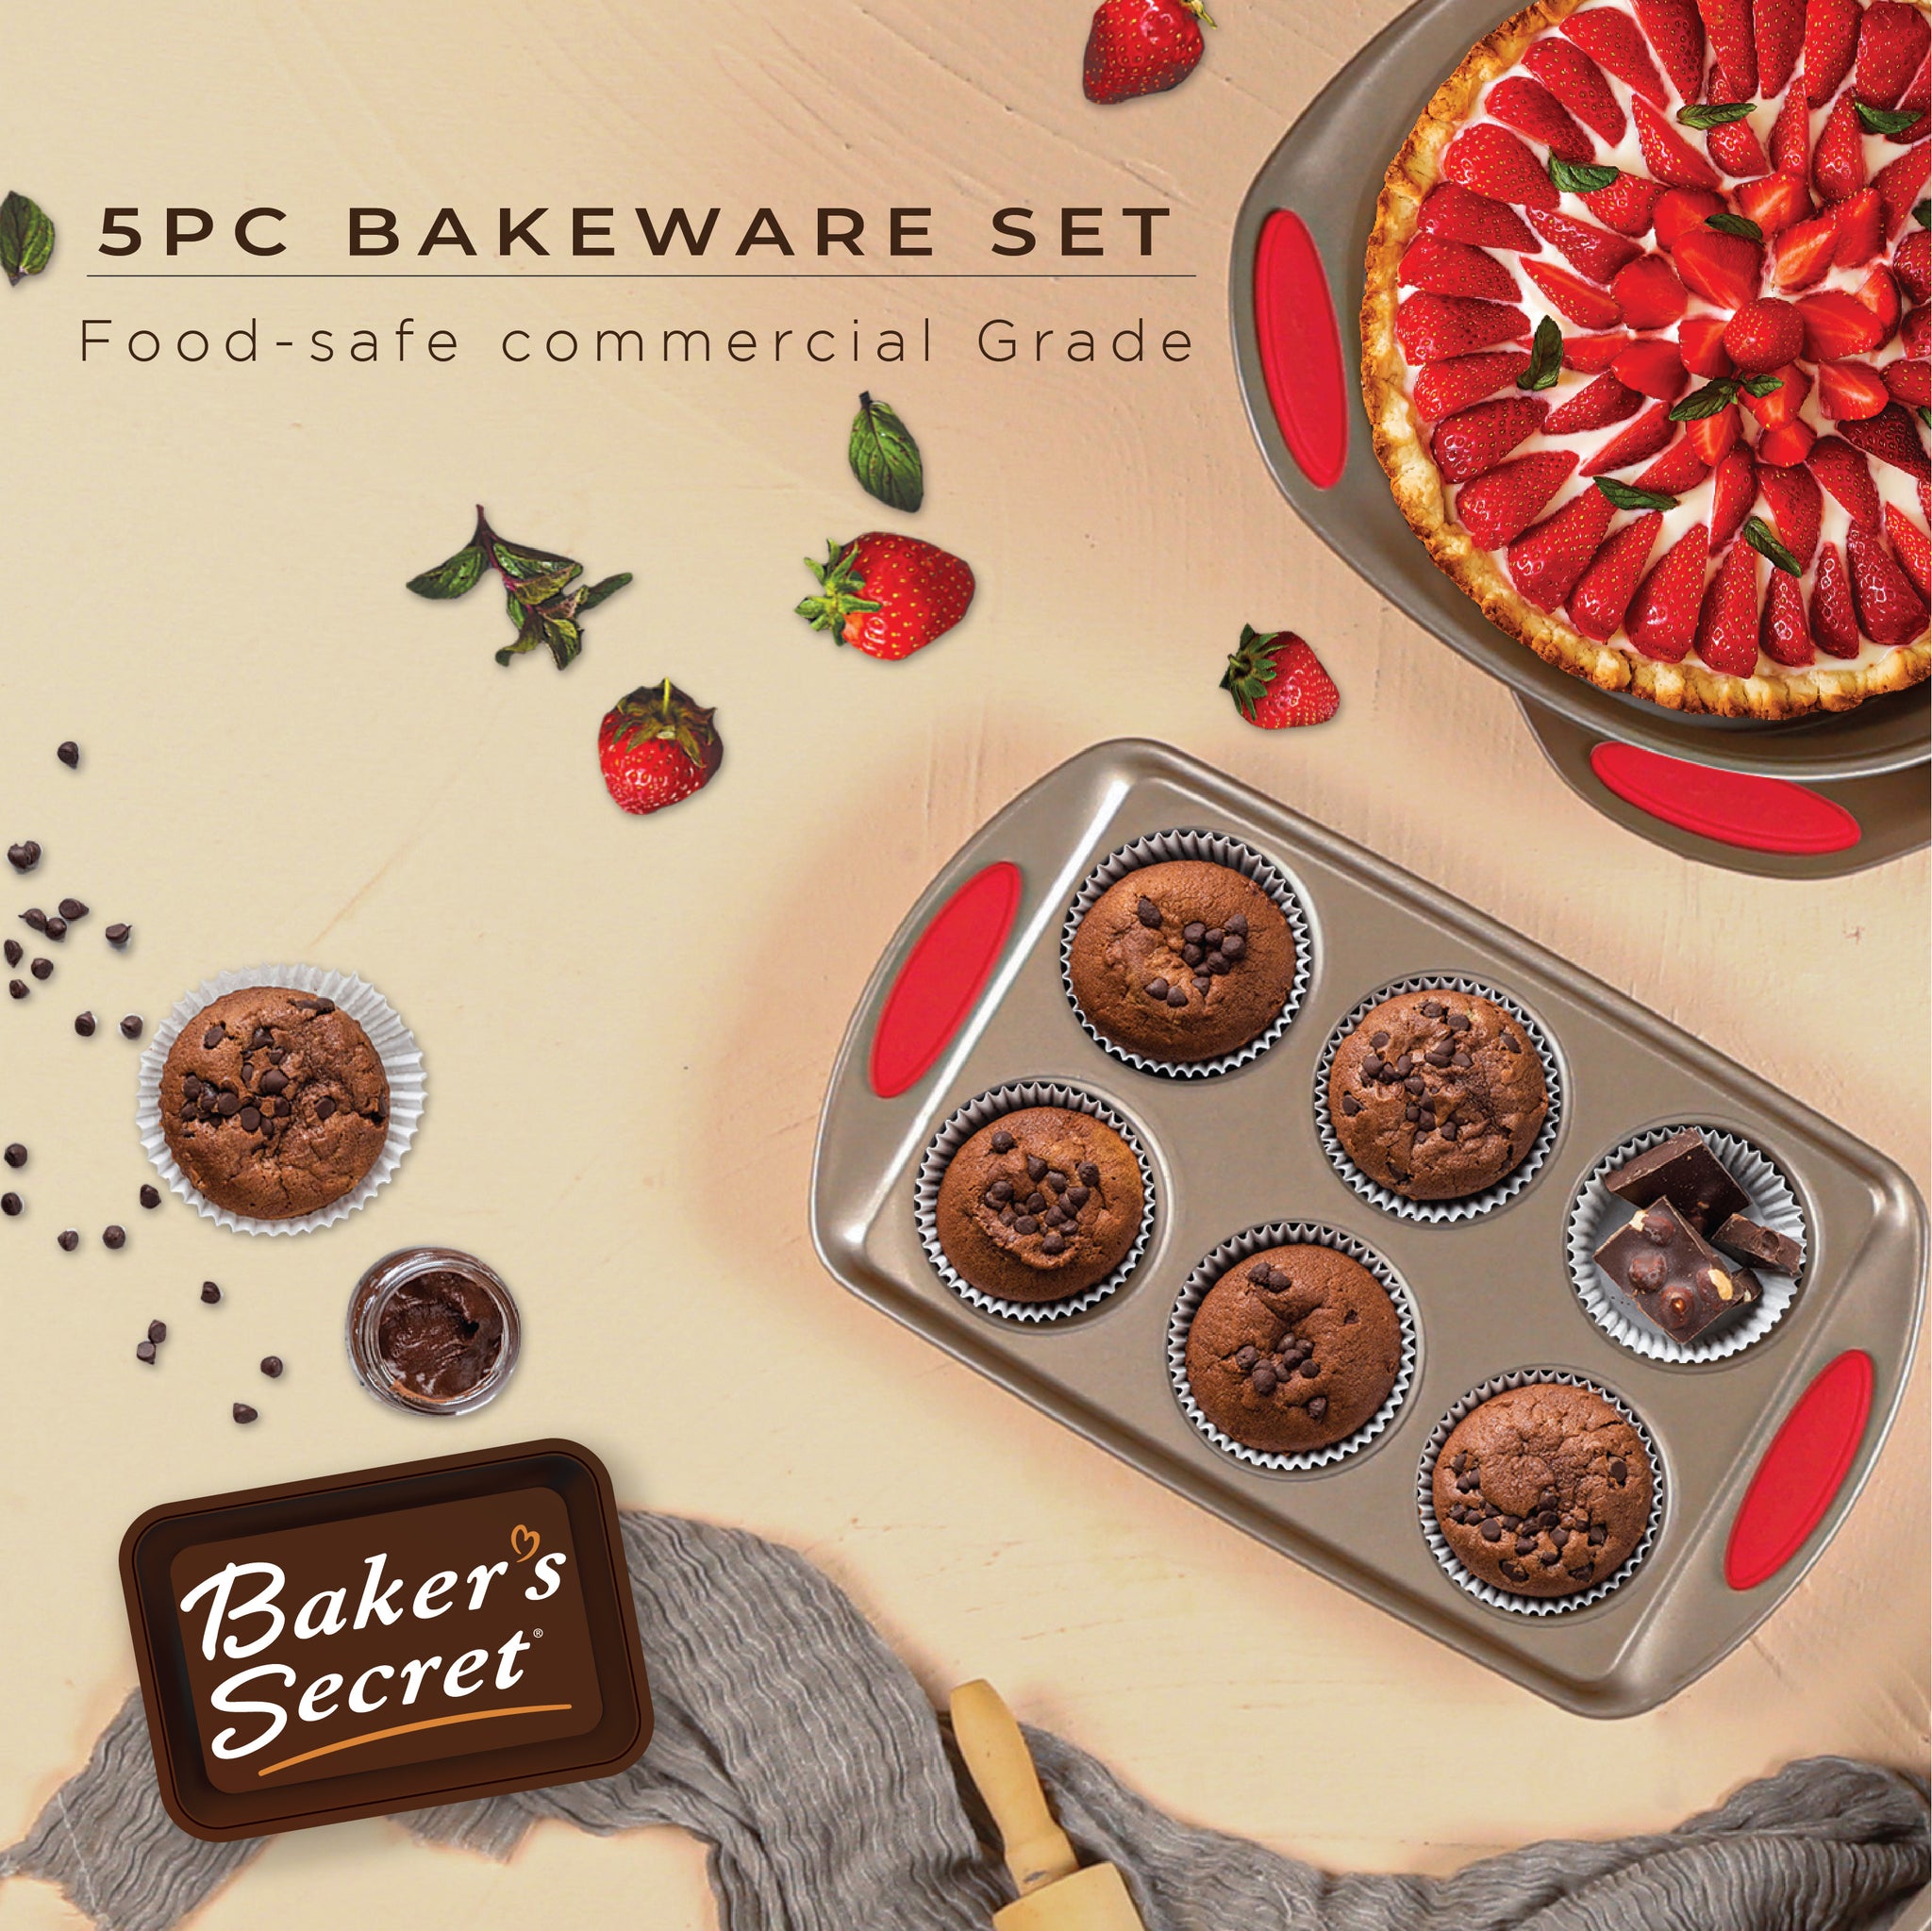 Baker's Secret Bakeware